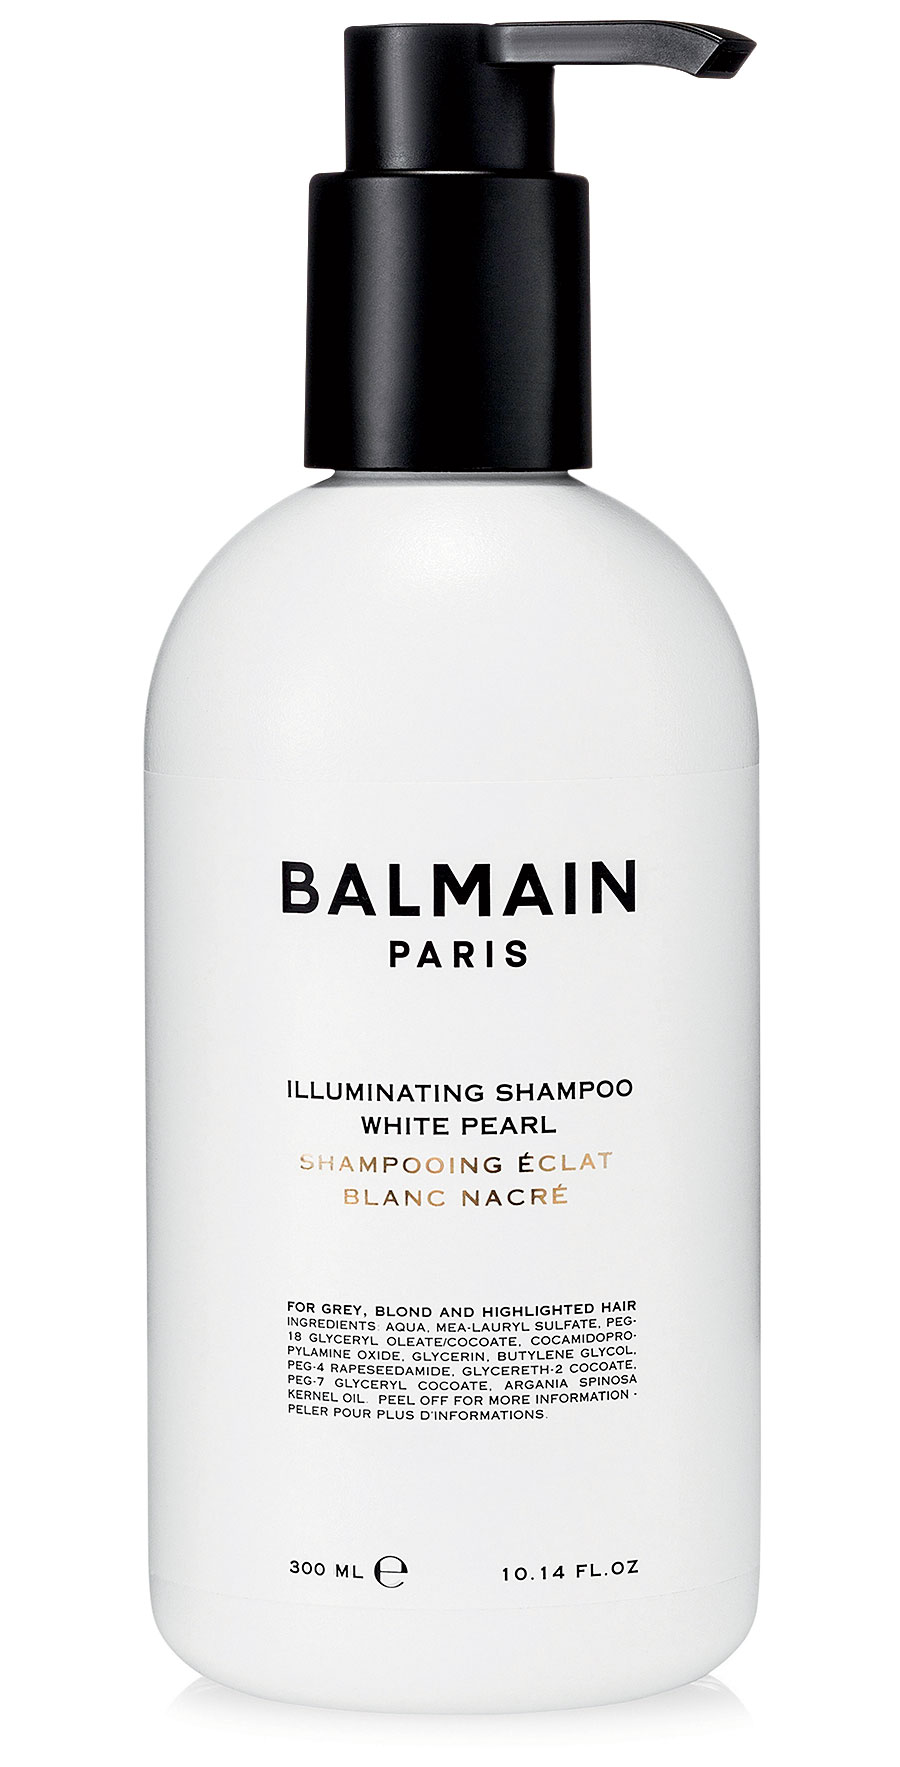 Balmain’s White Pearl Illuminating Shampoo